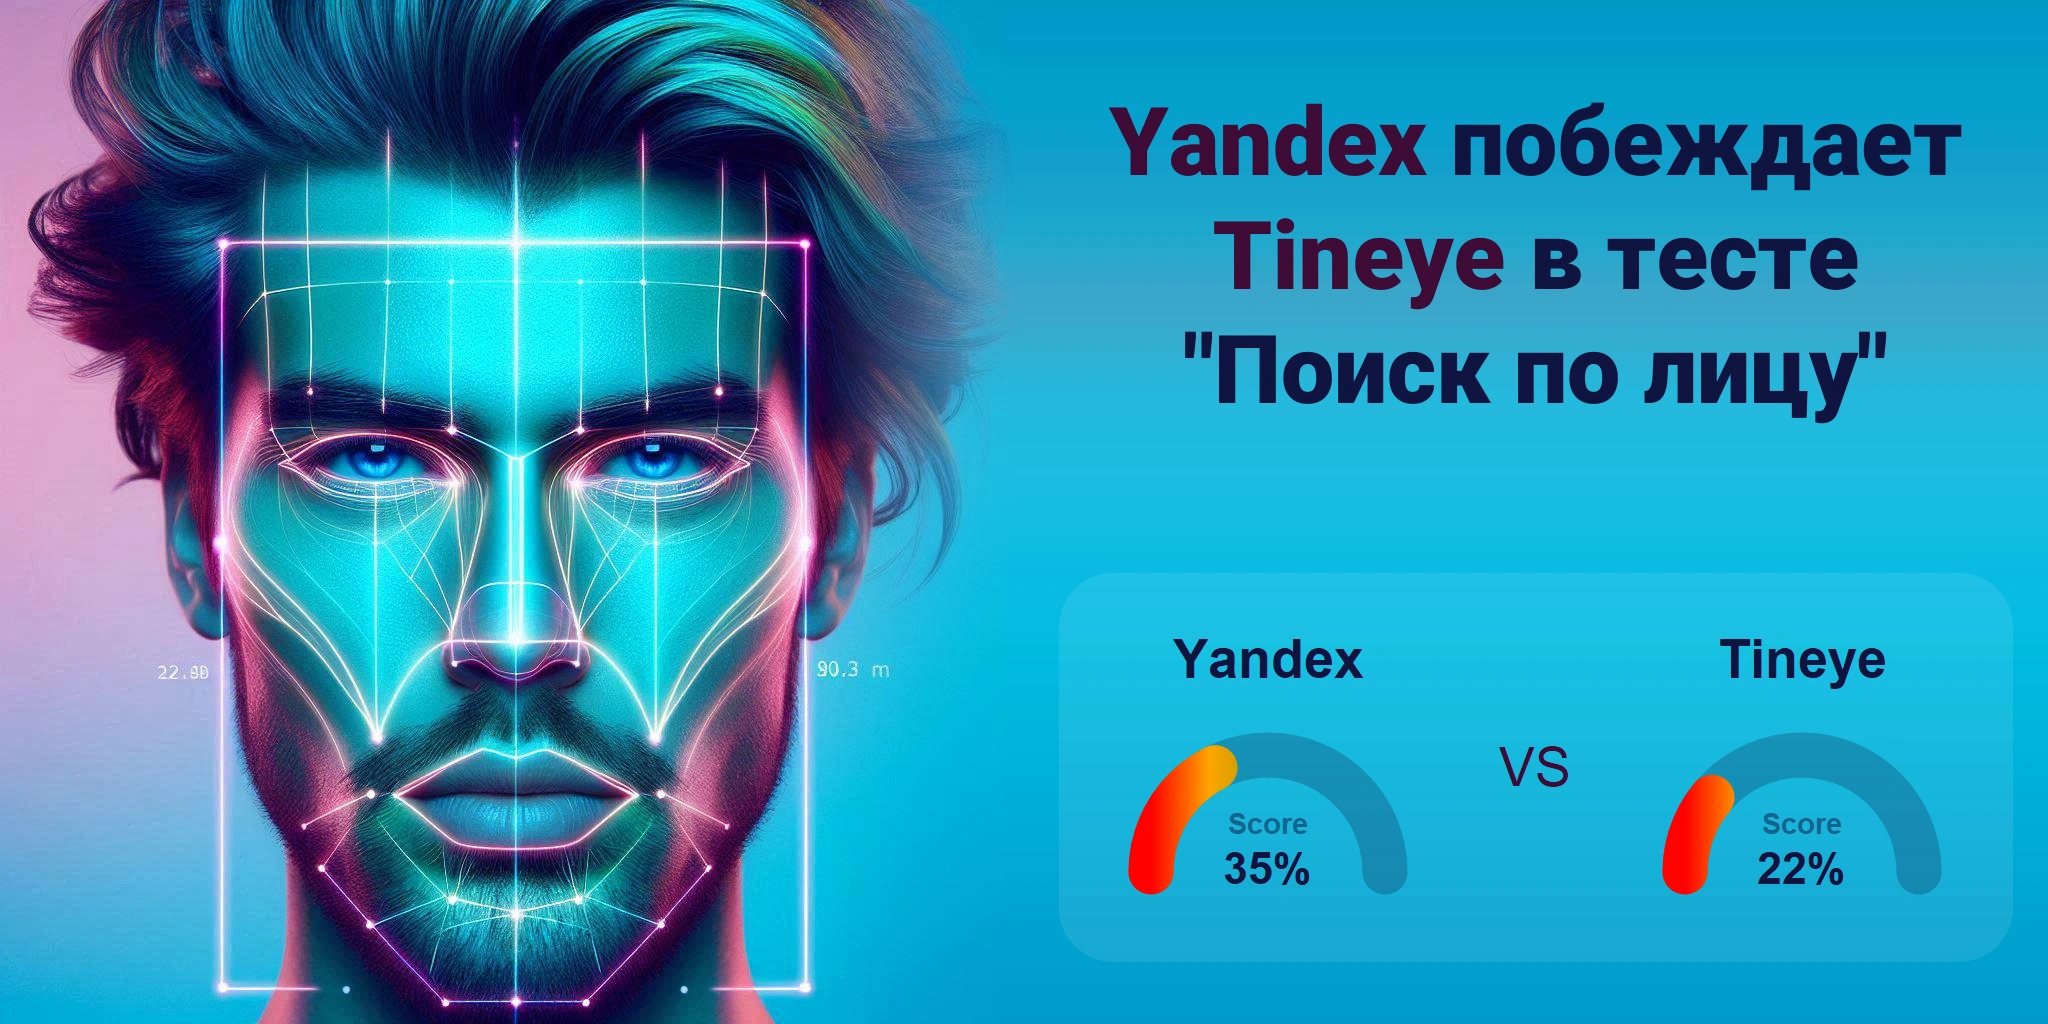 Что лучше для поиска по лицам: <br>Tineye или Yandex?